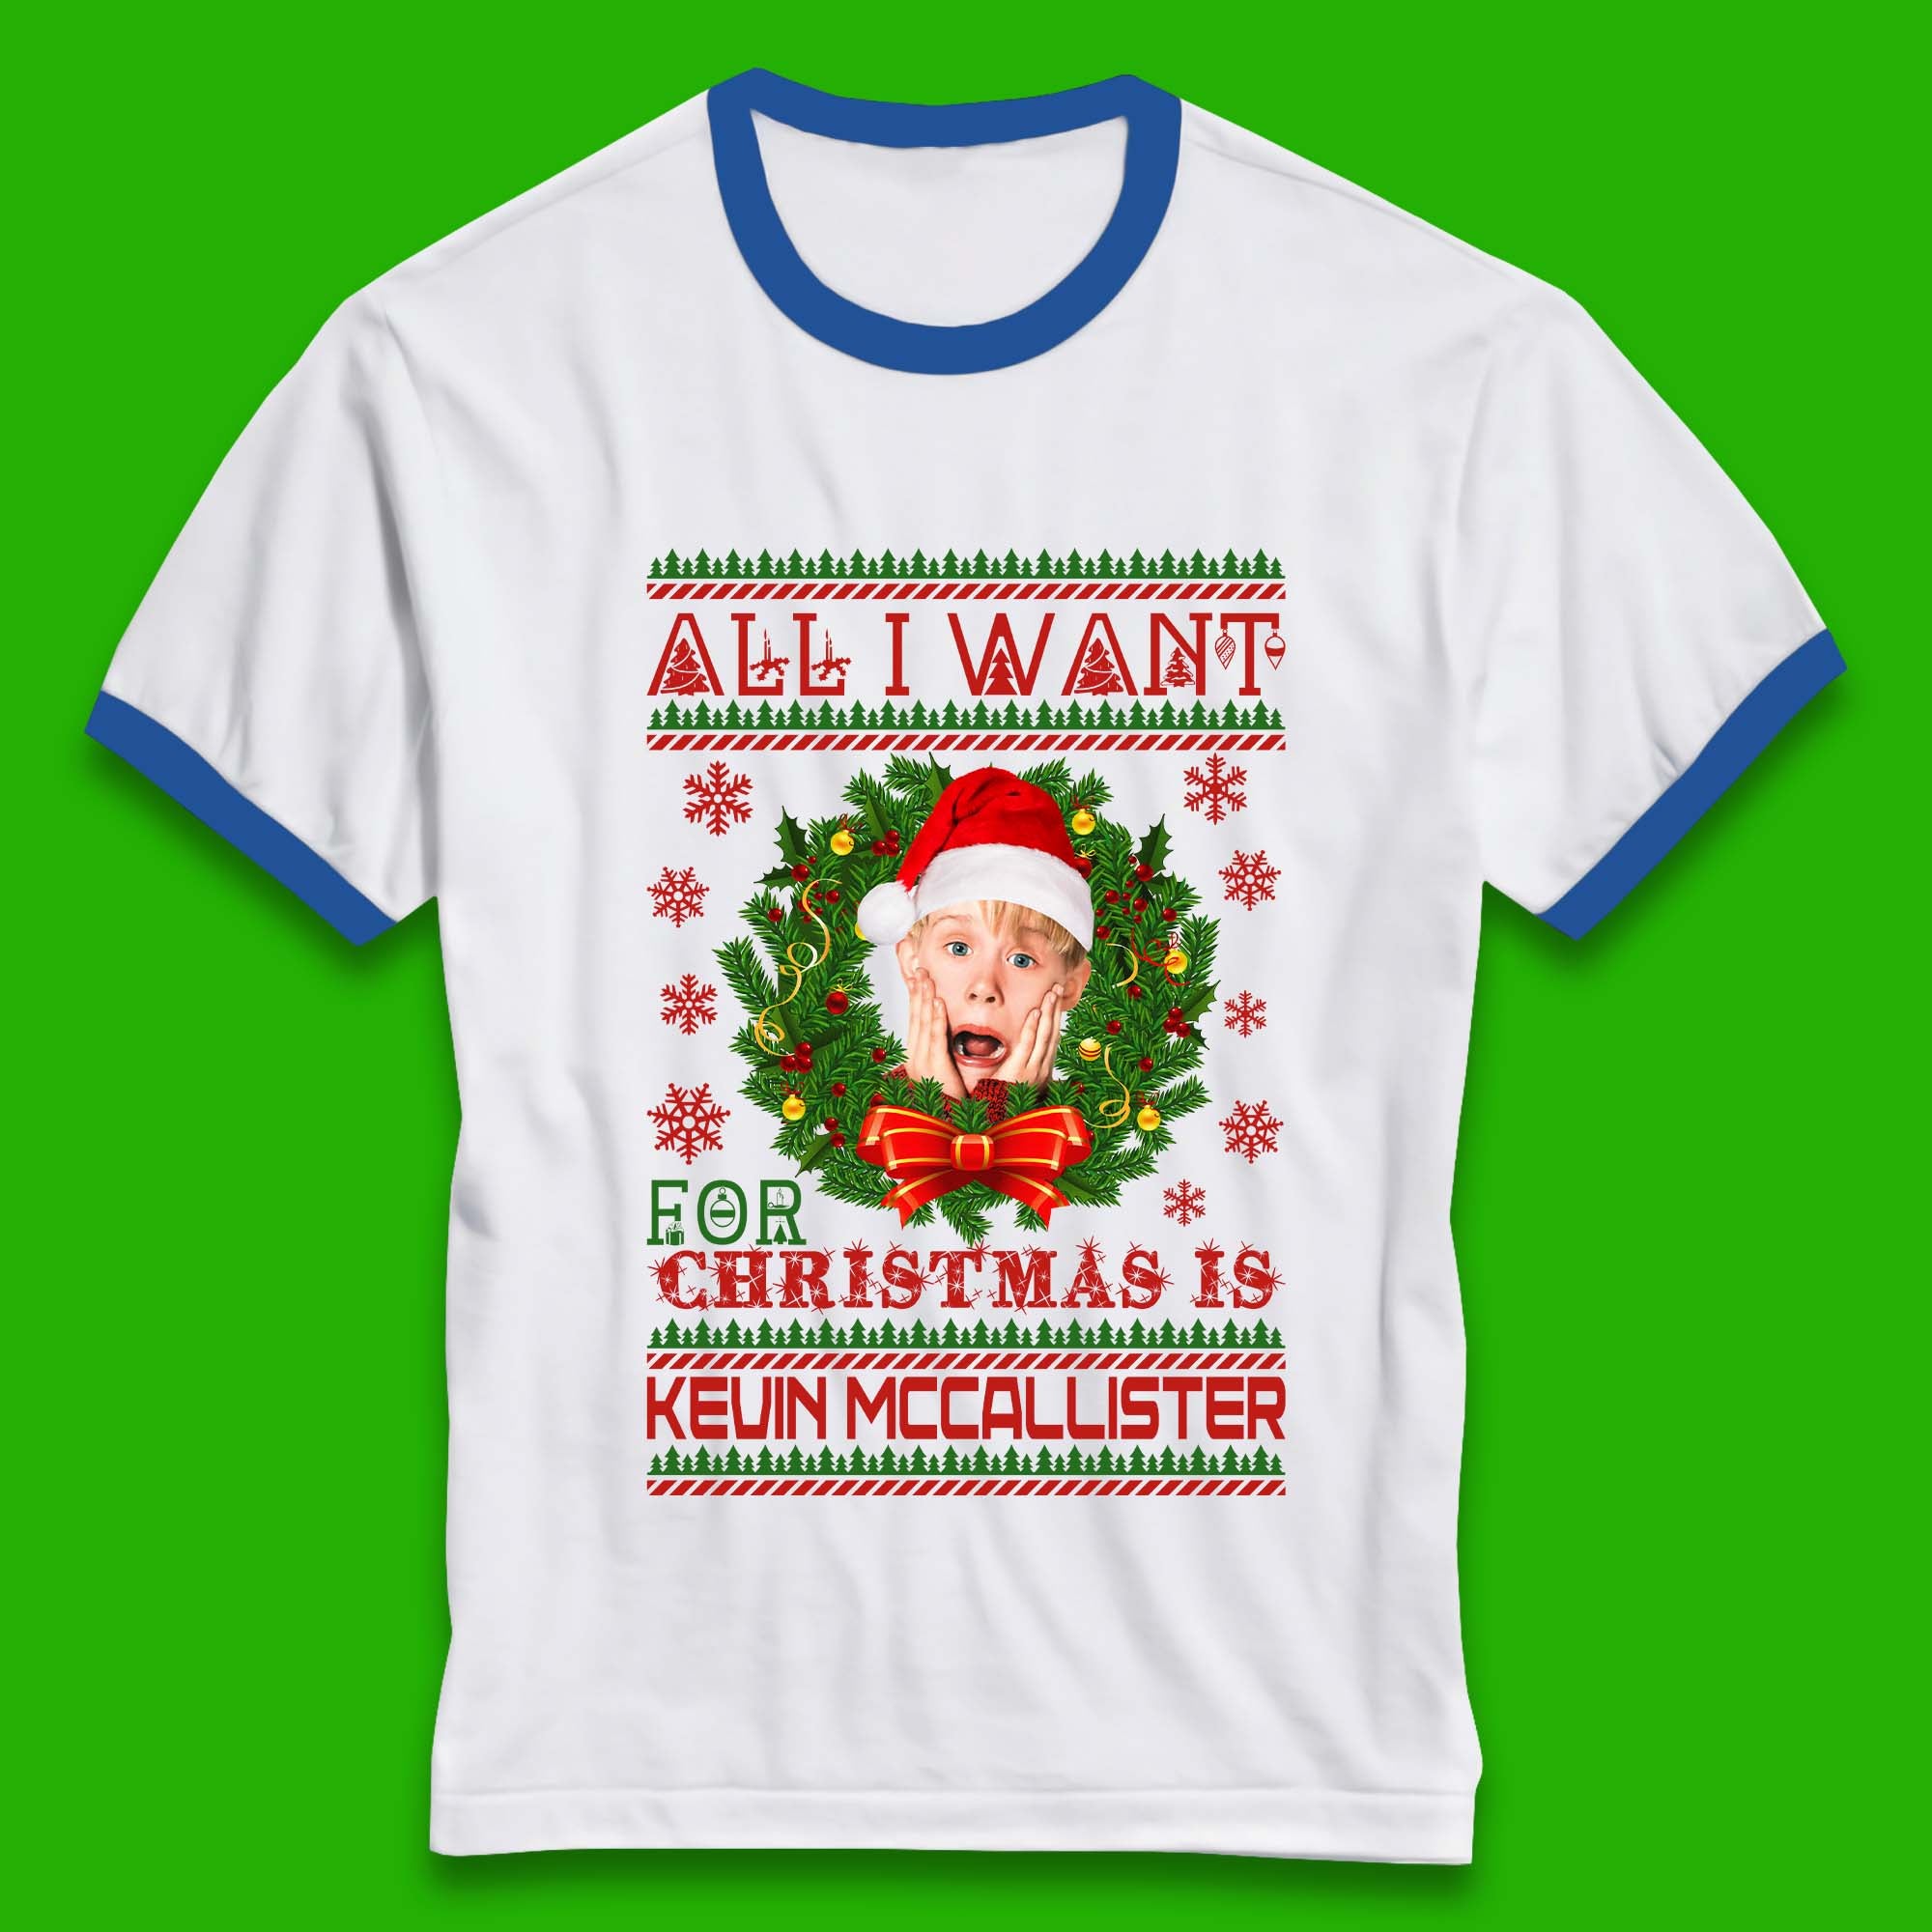 Kevin McCallister Christmas Ringer T-Shirt